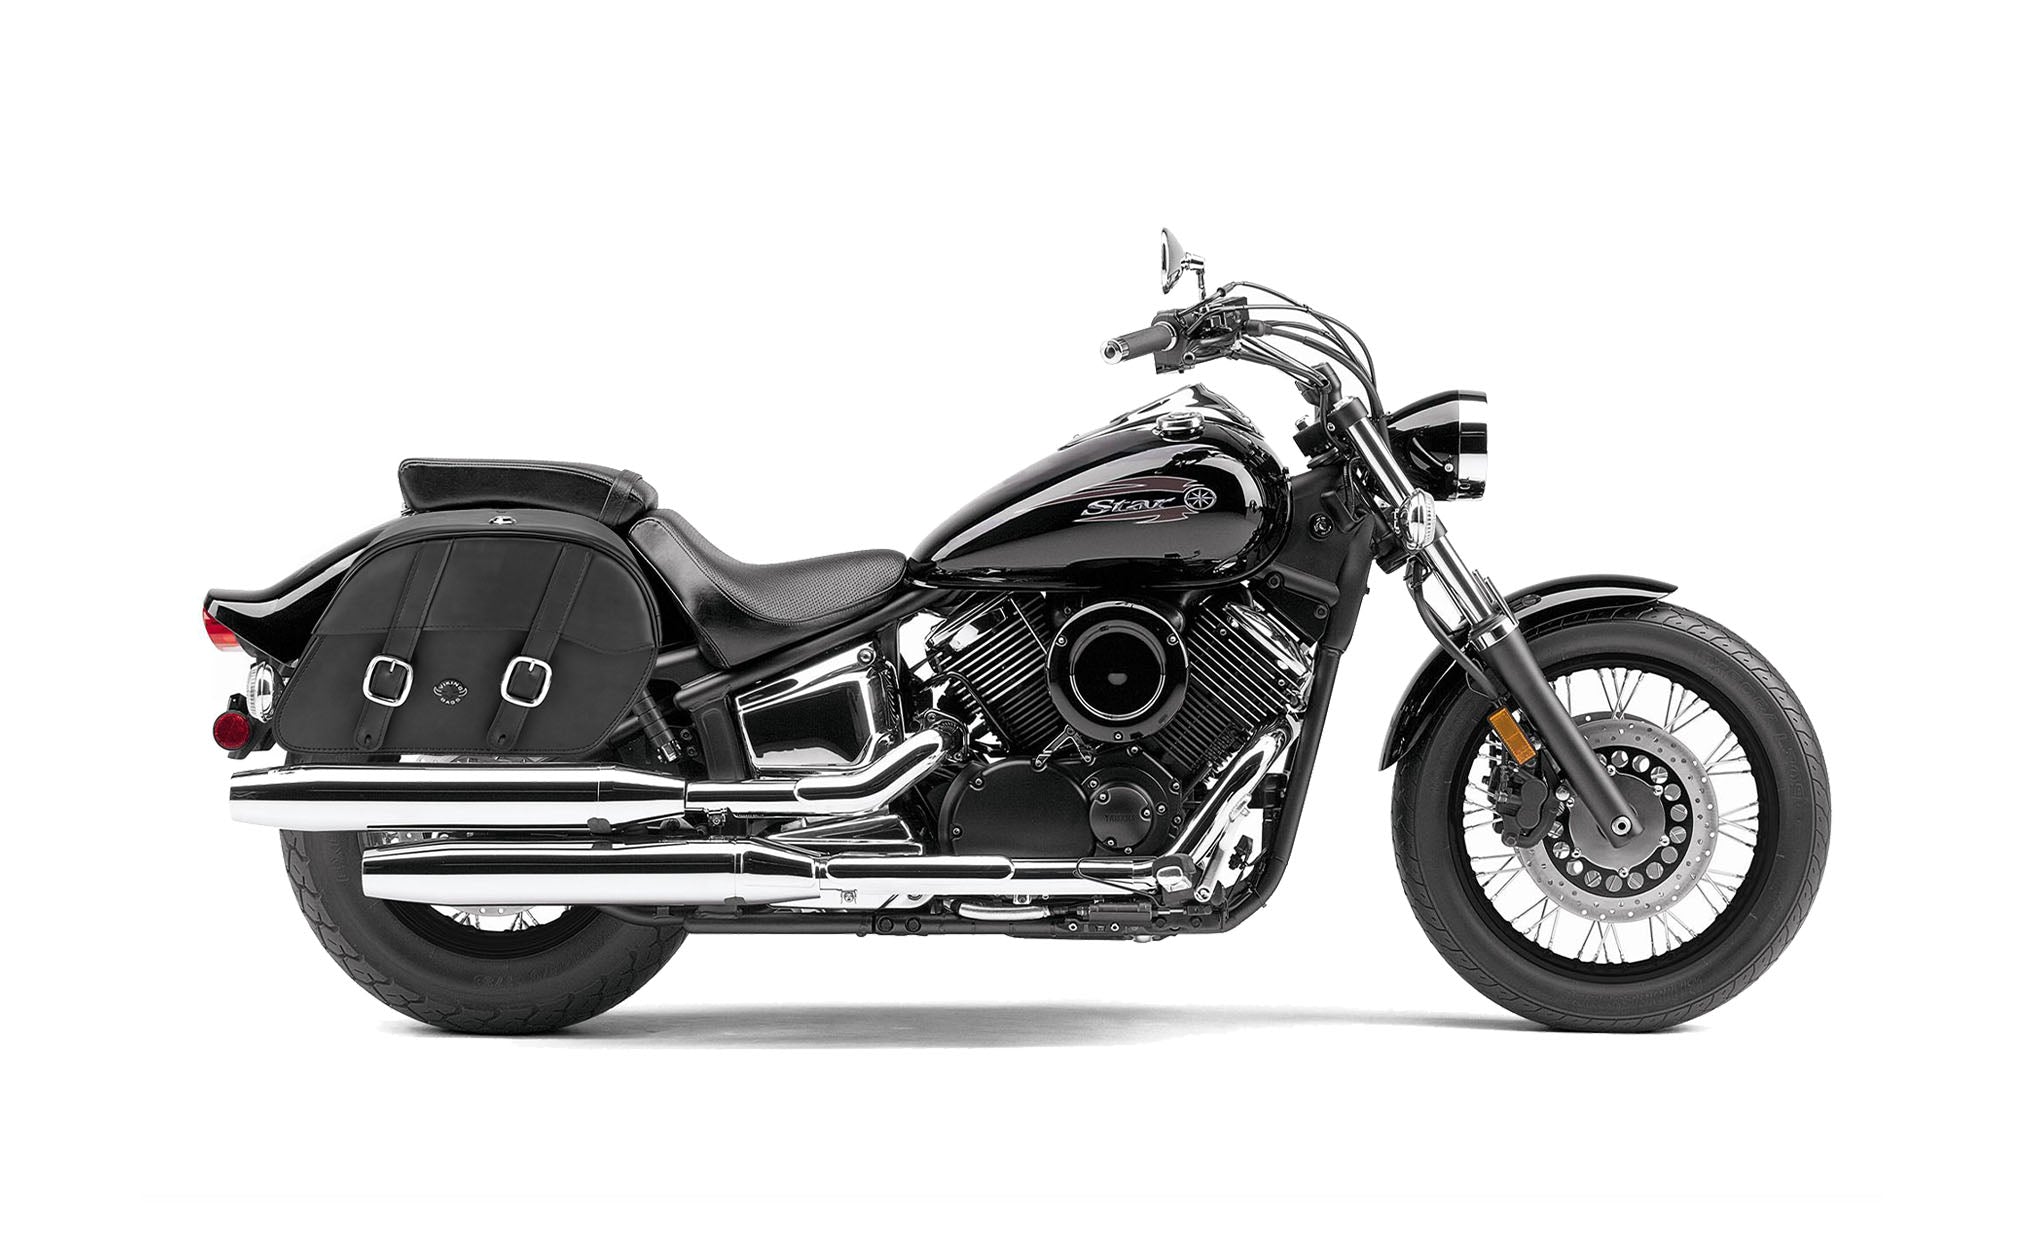 Viking Skarner Large Yamaha V Star 1100 Custom Xvs11T Leather Motorcycle Saddlebags on Bike Photo @expand